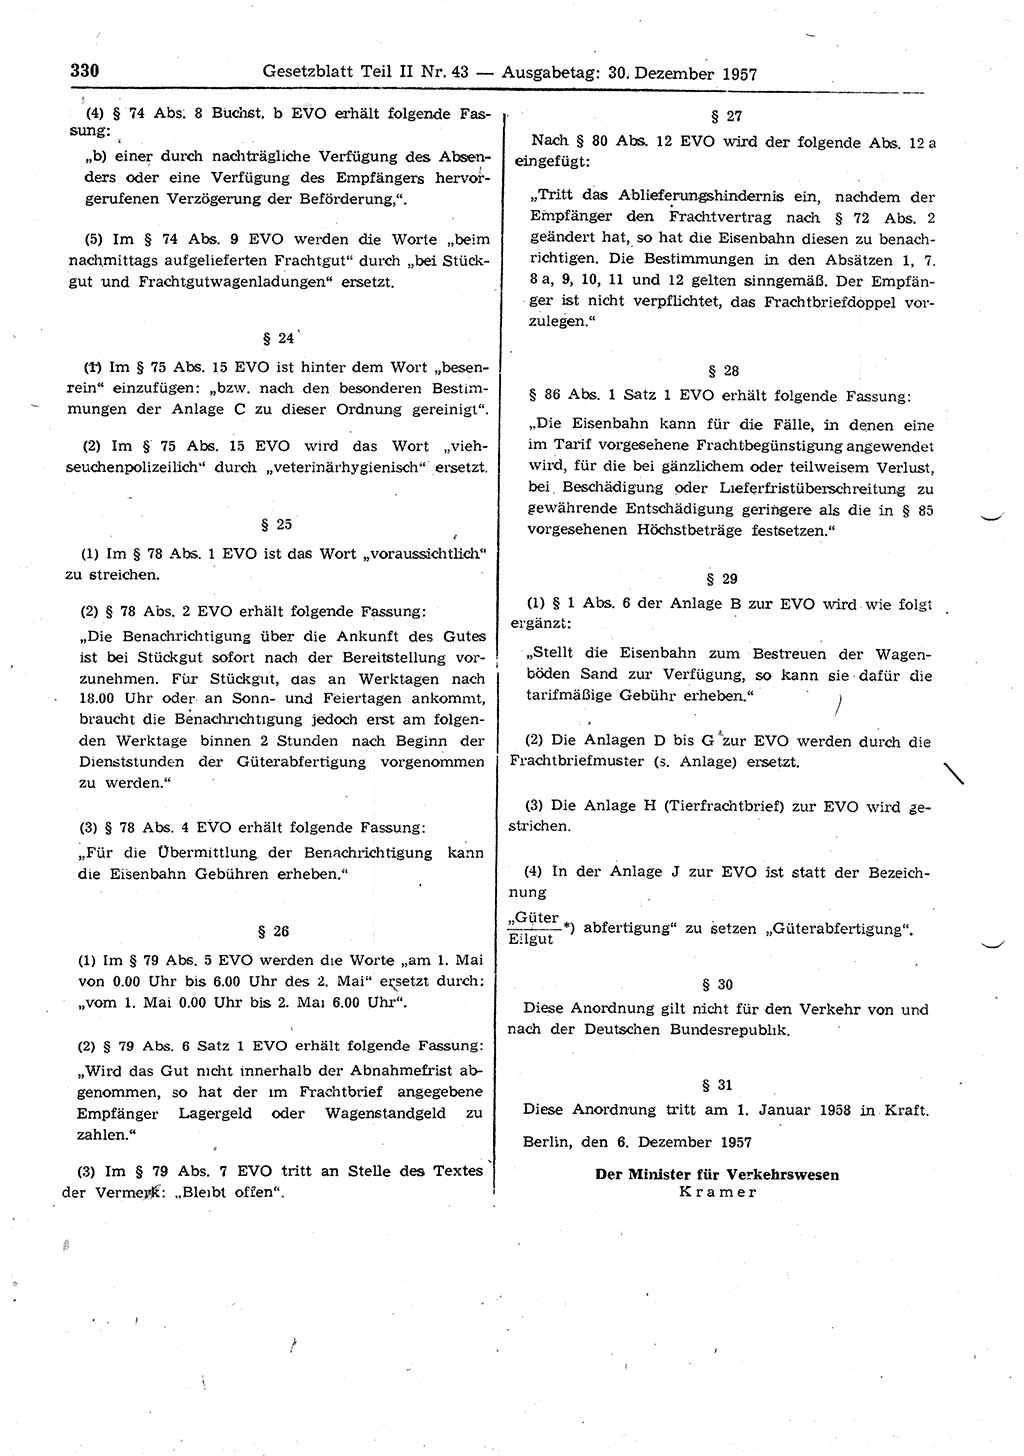 Gesetzblatt (GBl.) der Deutschen Demokratischen Republik (DDR) Teil ⅠⅠ 1957, Seite 330 (GBl. DDR ⅠⅠ 1957, S. 330)